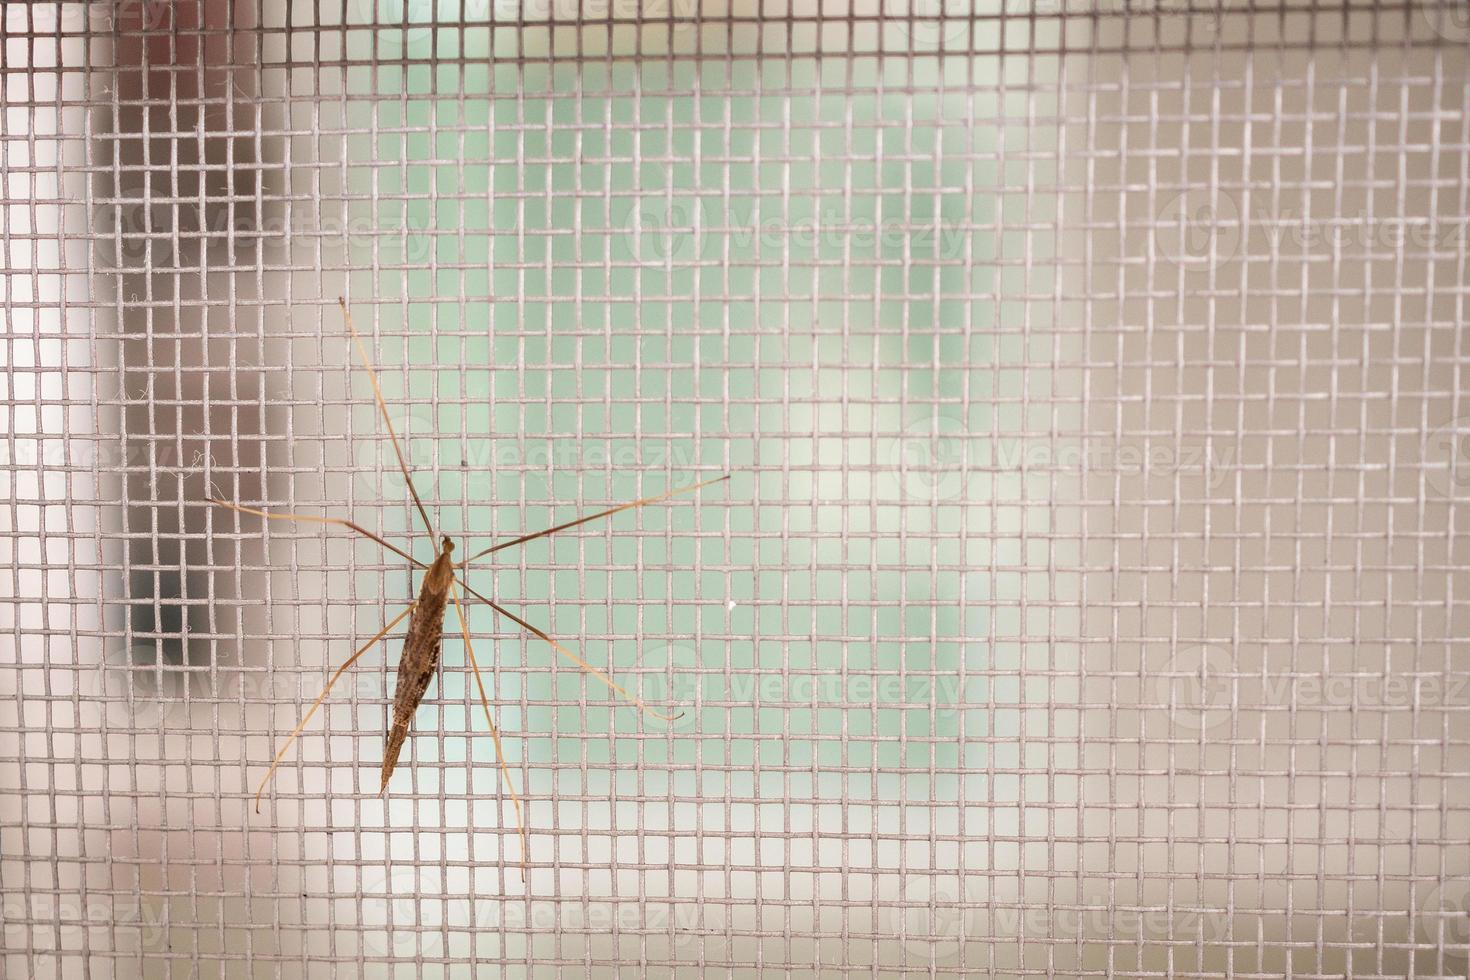 moustiquaire grillagée sur la fenêtre de la maison protection contre les insectes photo